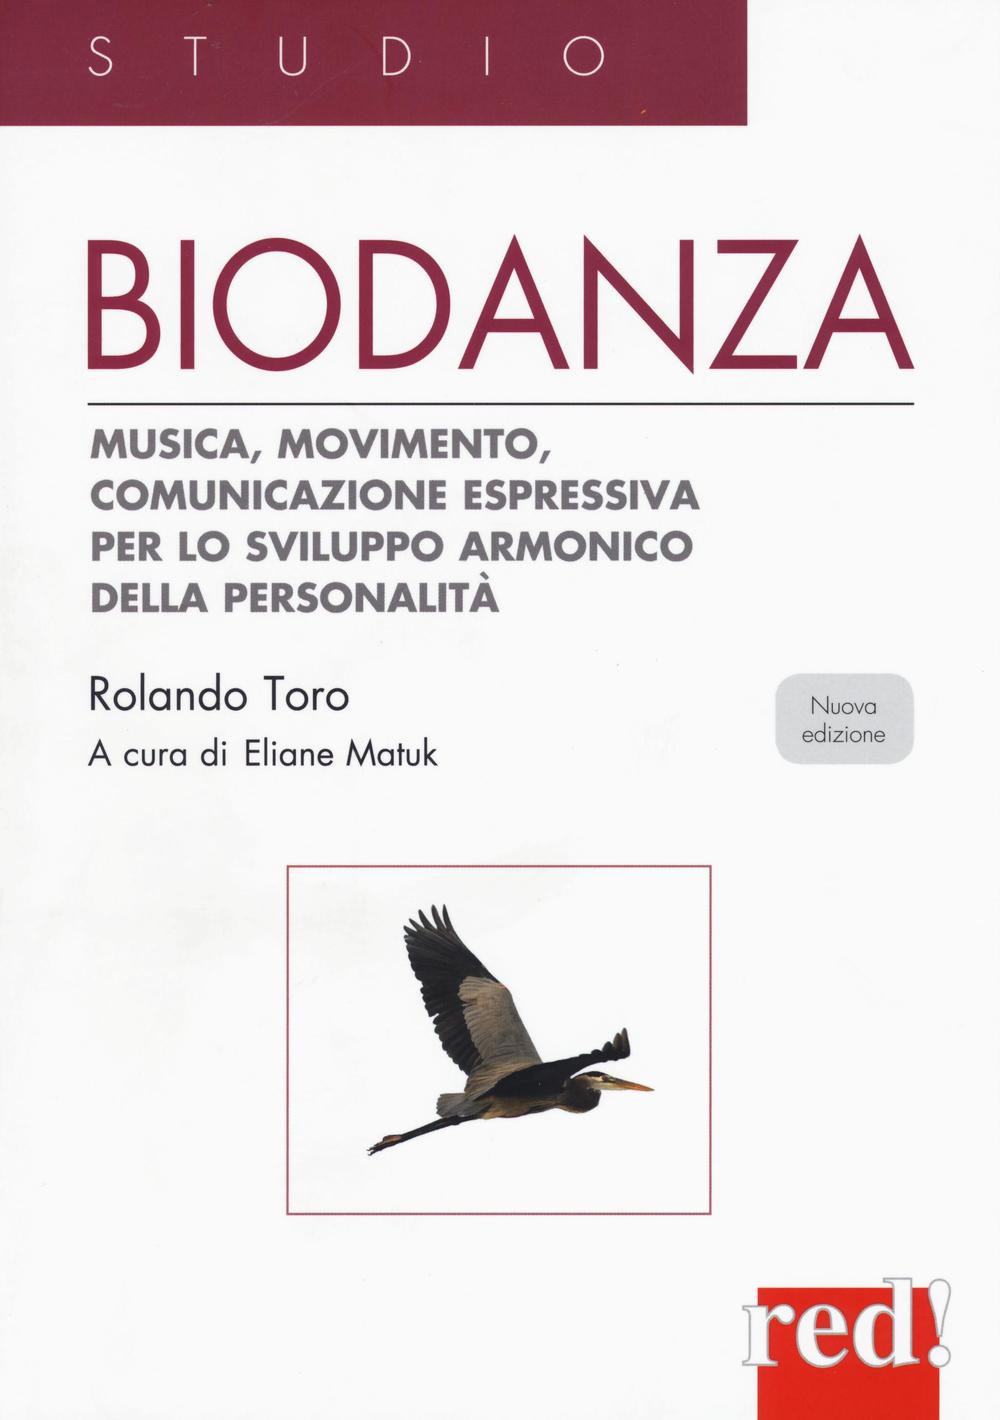 Carte Biodanza. Musica, movimento, comunicazione espressiva per lo sviluppo armonico della personalità Rolando Toro